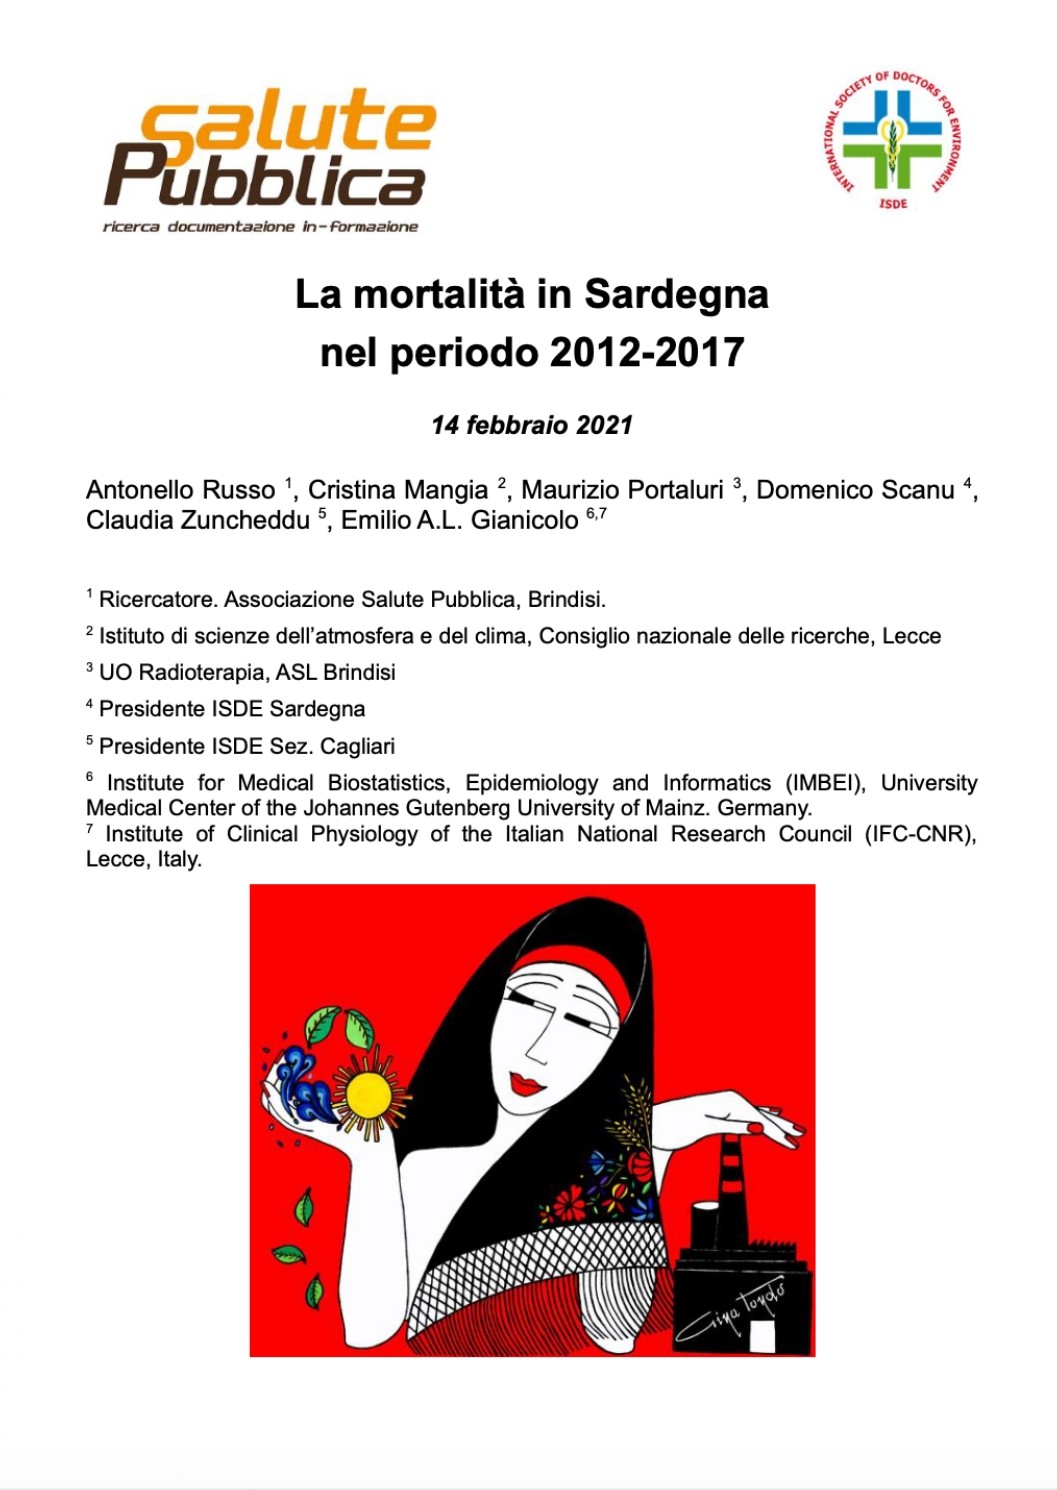 ISDE Sardegna: presentato lo studio sulla mortalità̀ nell’isola nel periodo 2012-2017